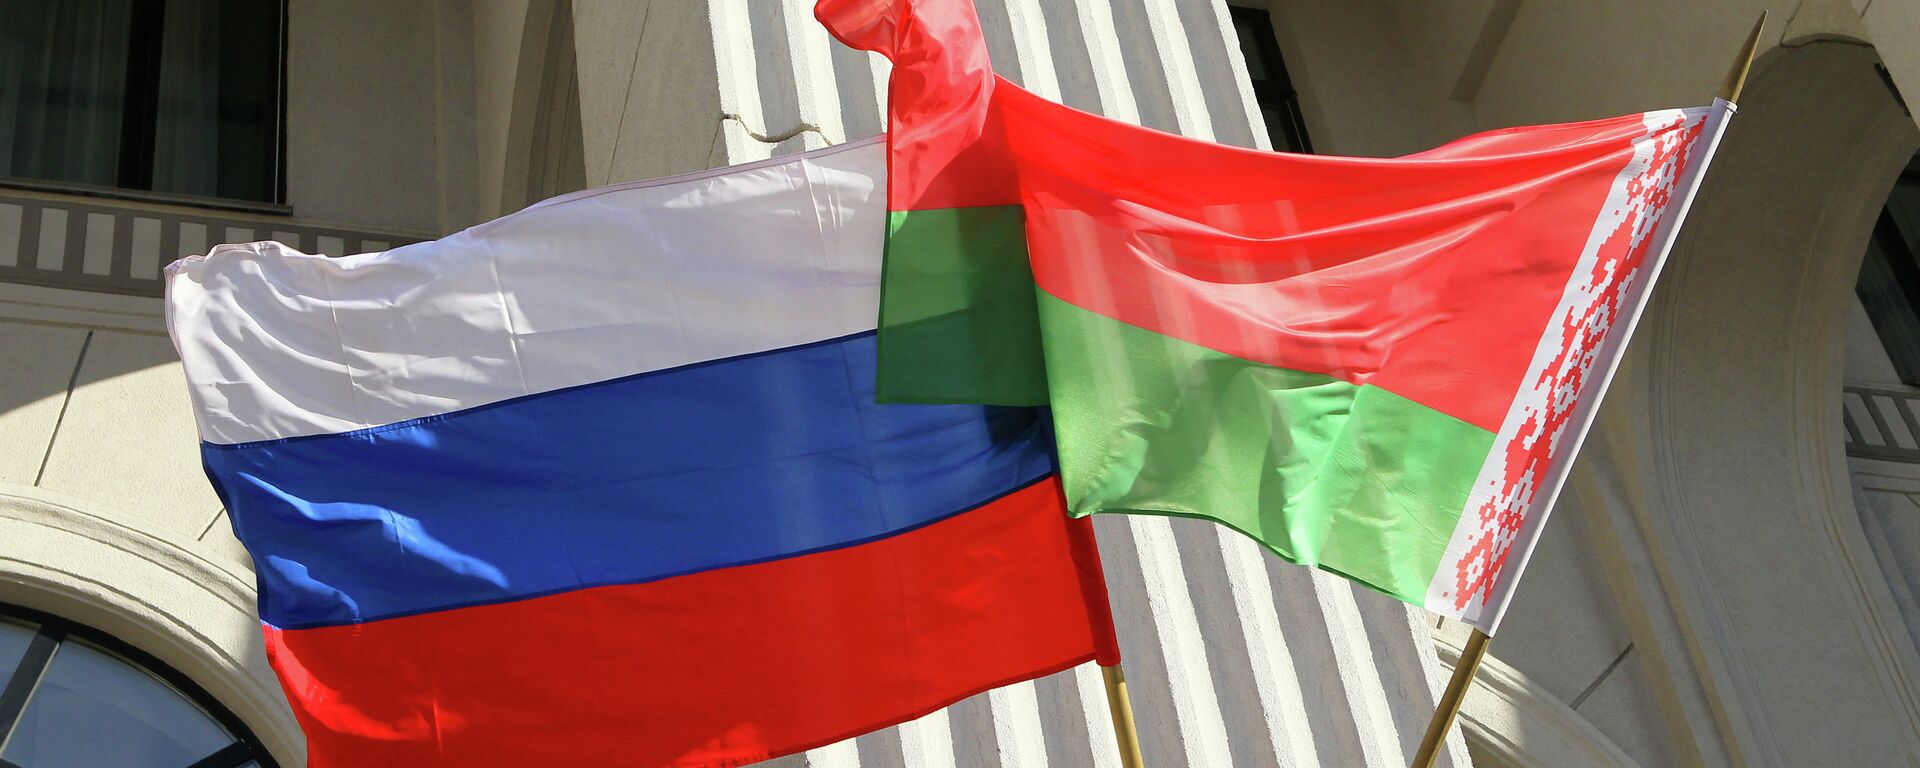 Beloruska i ruska zastava - Sputnik Srbija, 1920, 03.06.2021